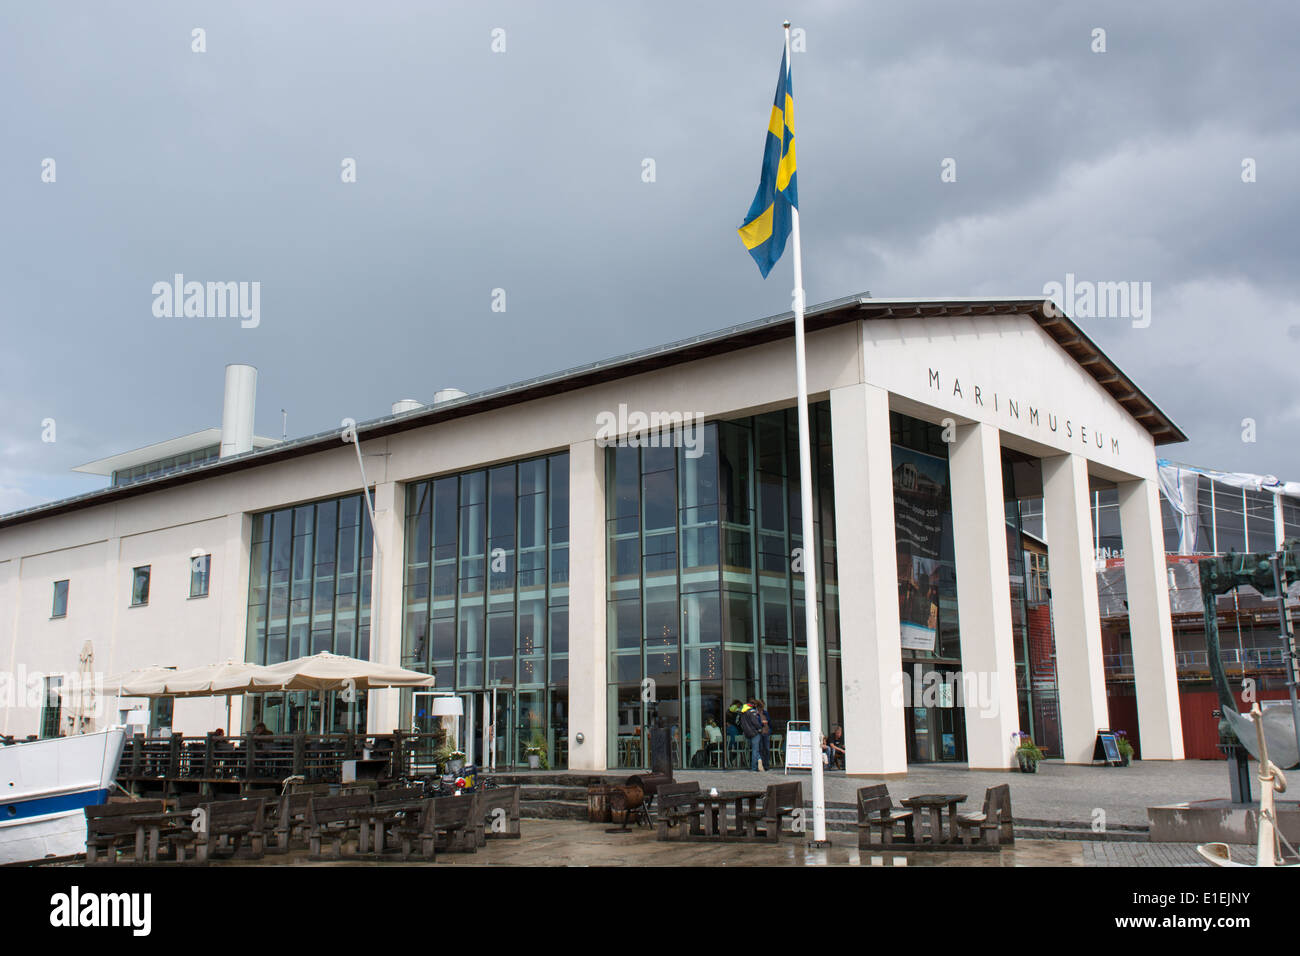 Marinmuseum o museo naval en Karlskrona, Suecia, en un día lluvioso Foto de stock